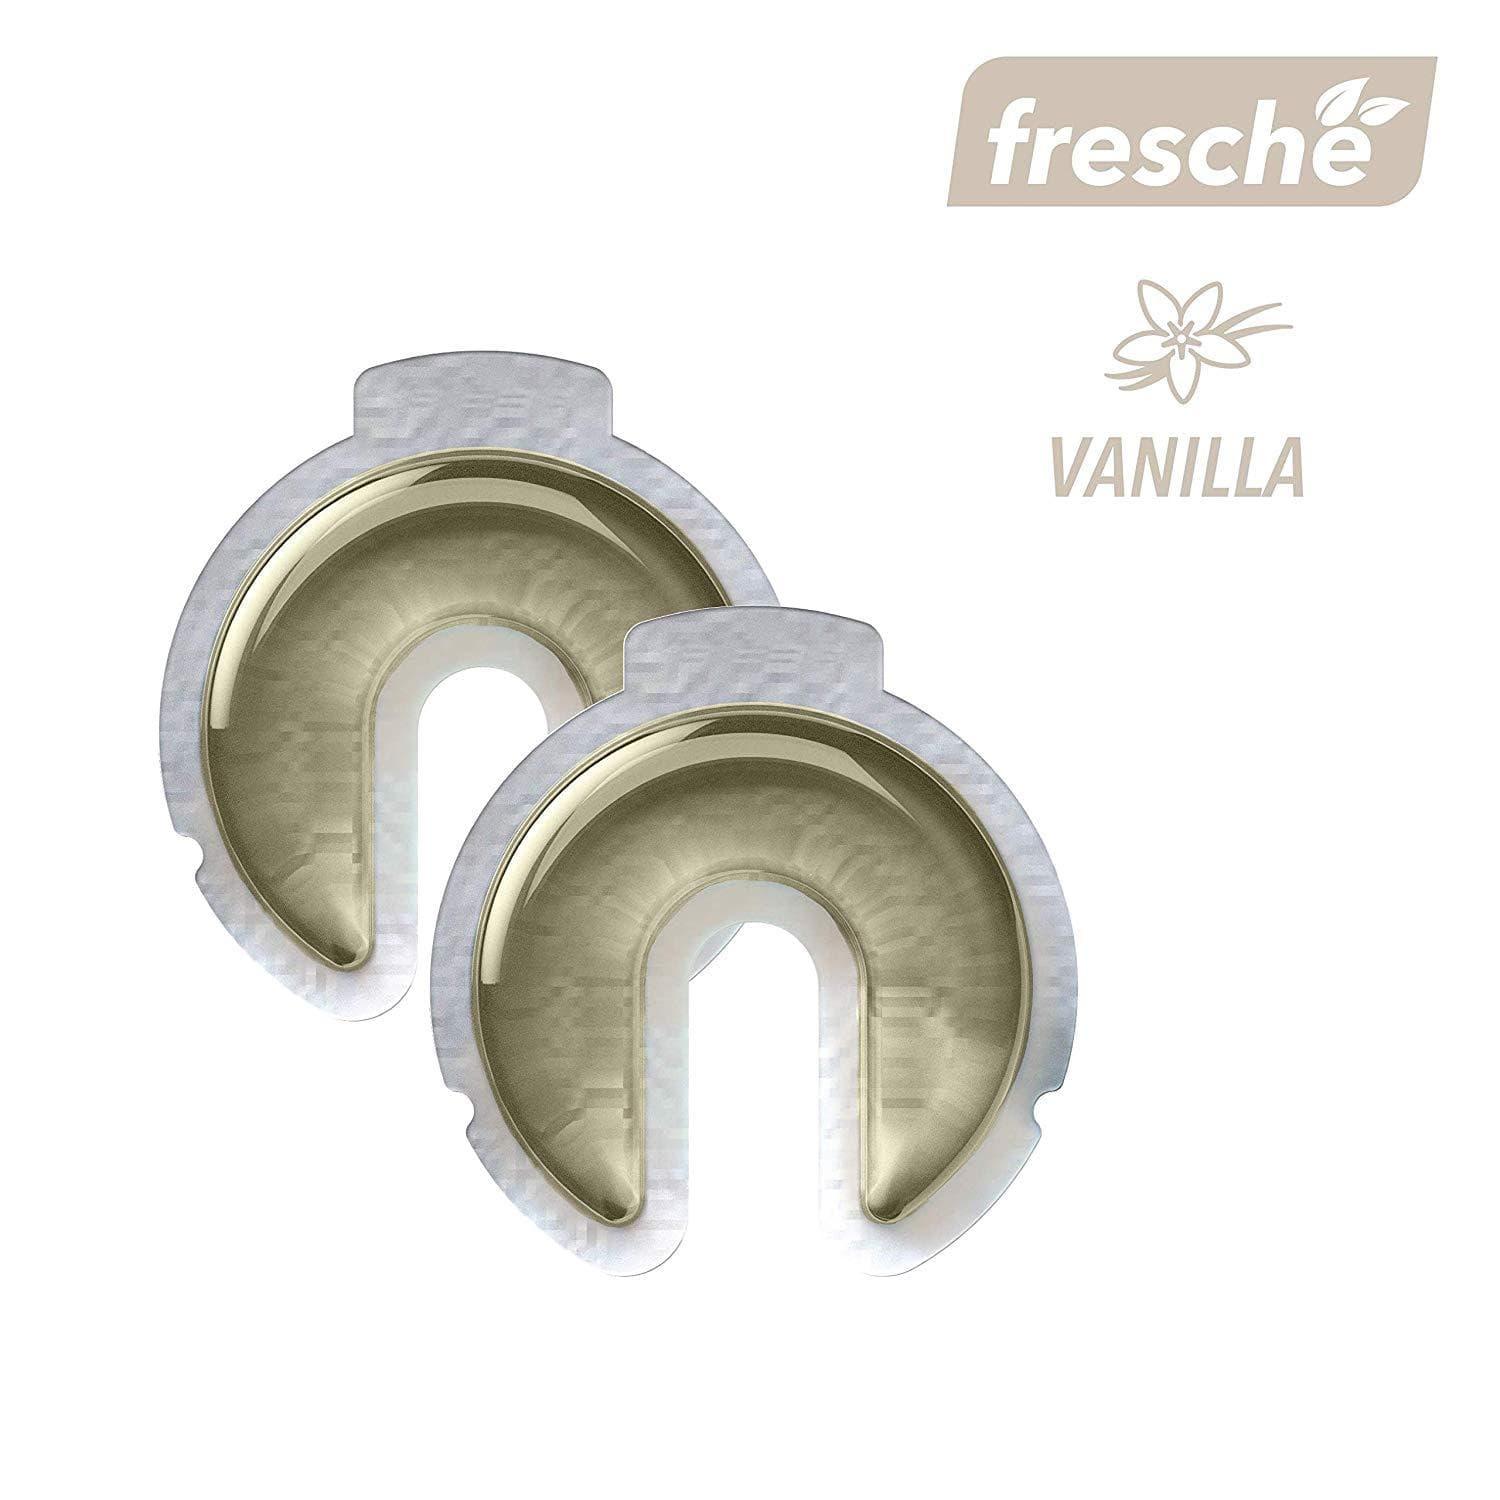 جهاز معطر الهواء لحامل الهاتف Scosche - Air Freshener Refill Cartridges for Fresche Mounts - فانيلا